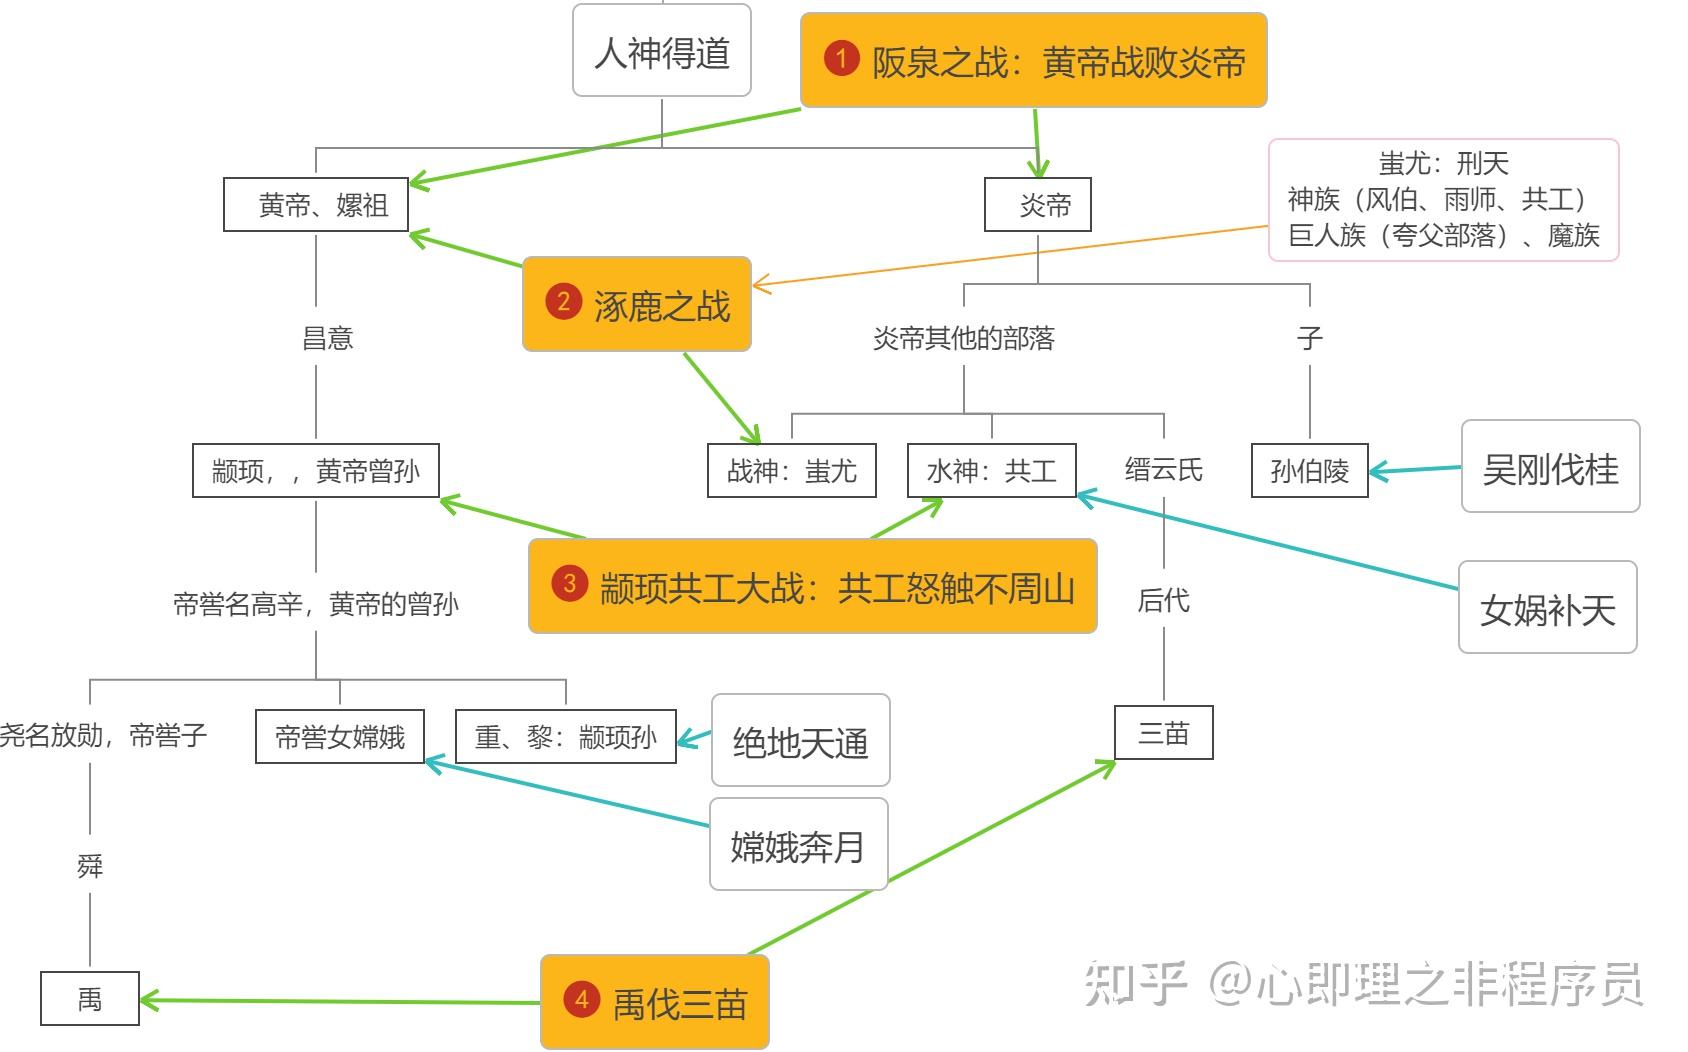 中国神话从时间主线可以分成四个阶段:上古神仙,人神得道,建立天庭